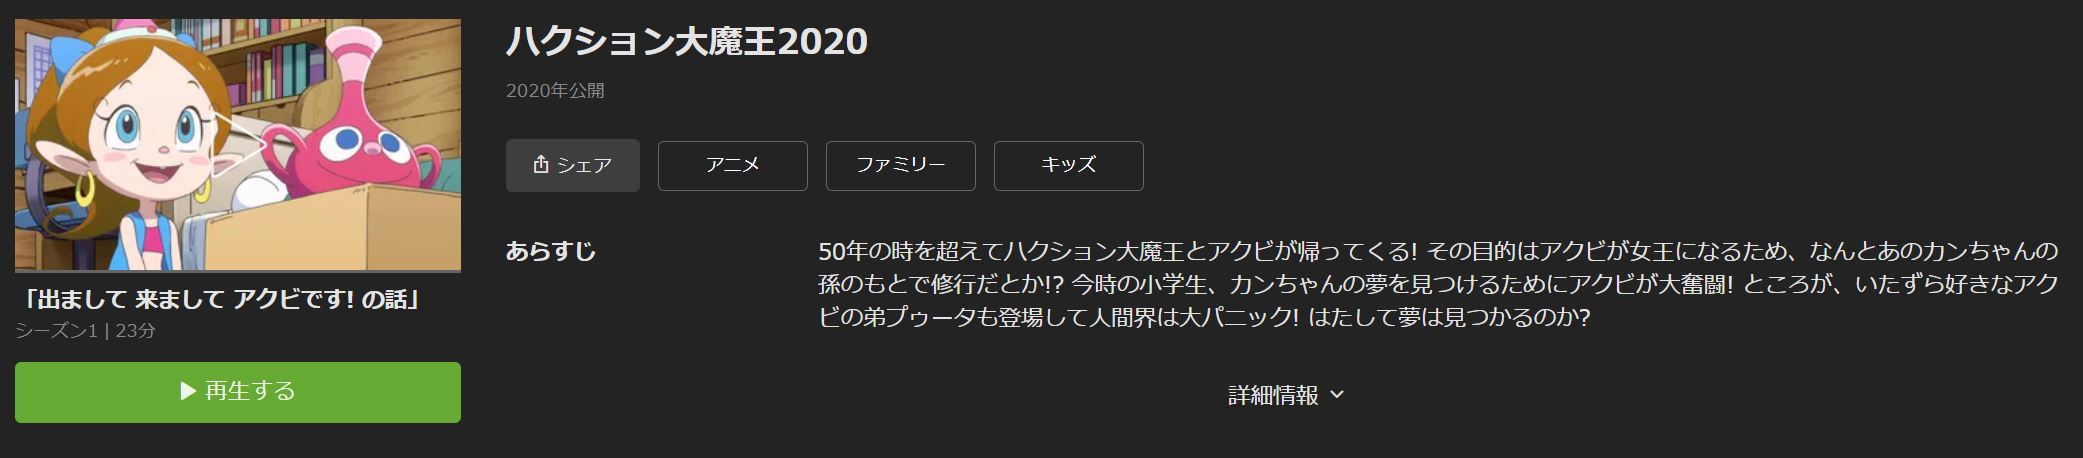 ハクション大魔王2020 無料動画